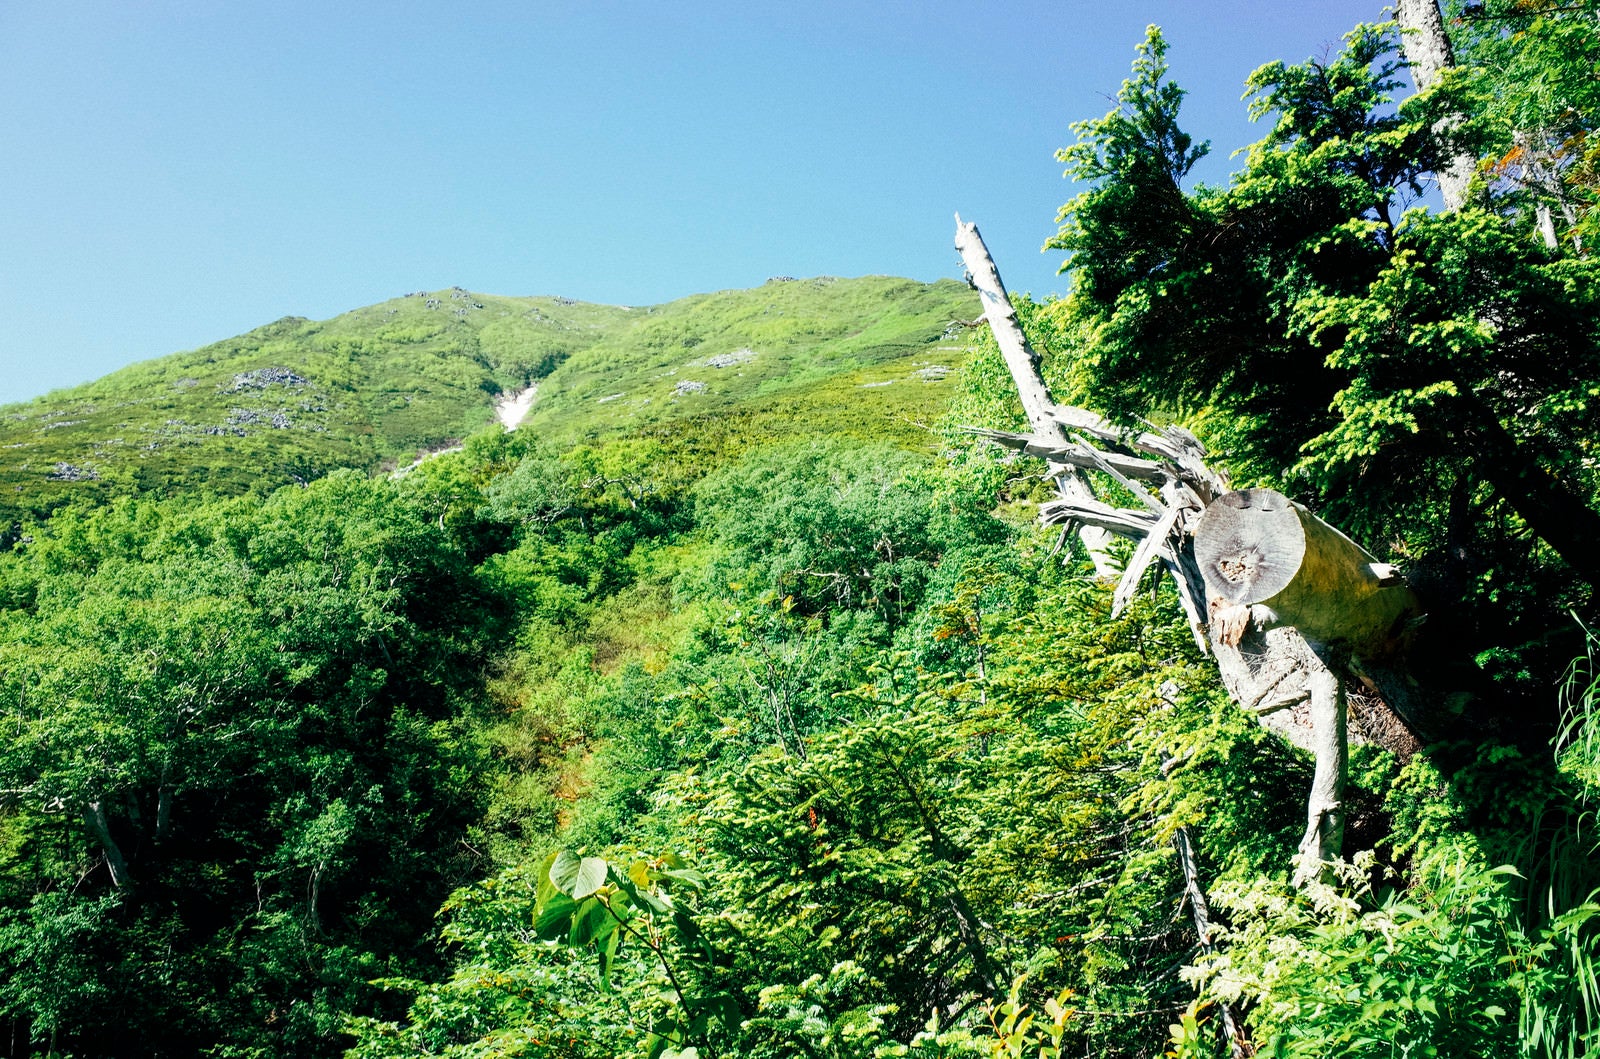 「一ノ沢登山道から見上げる常念岳山頂方面」の写真